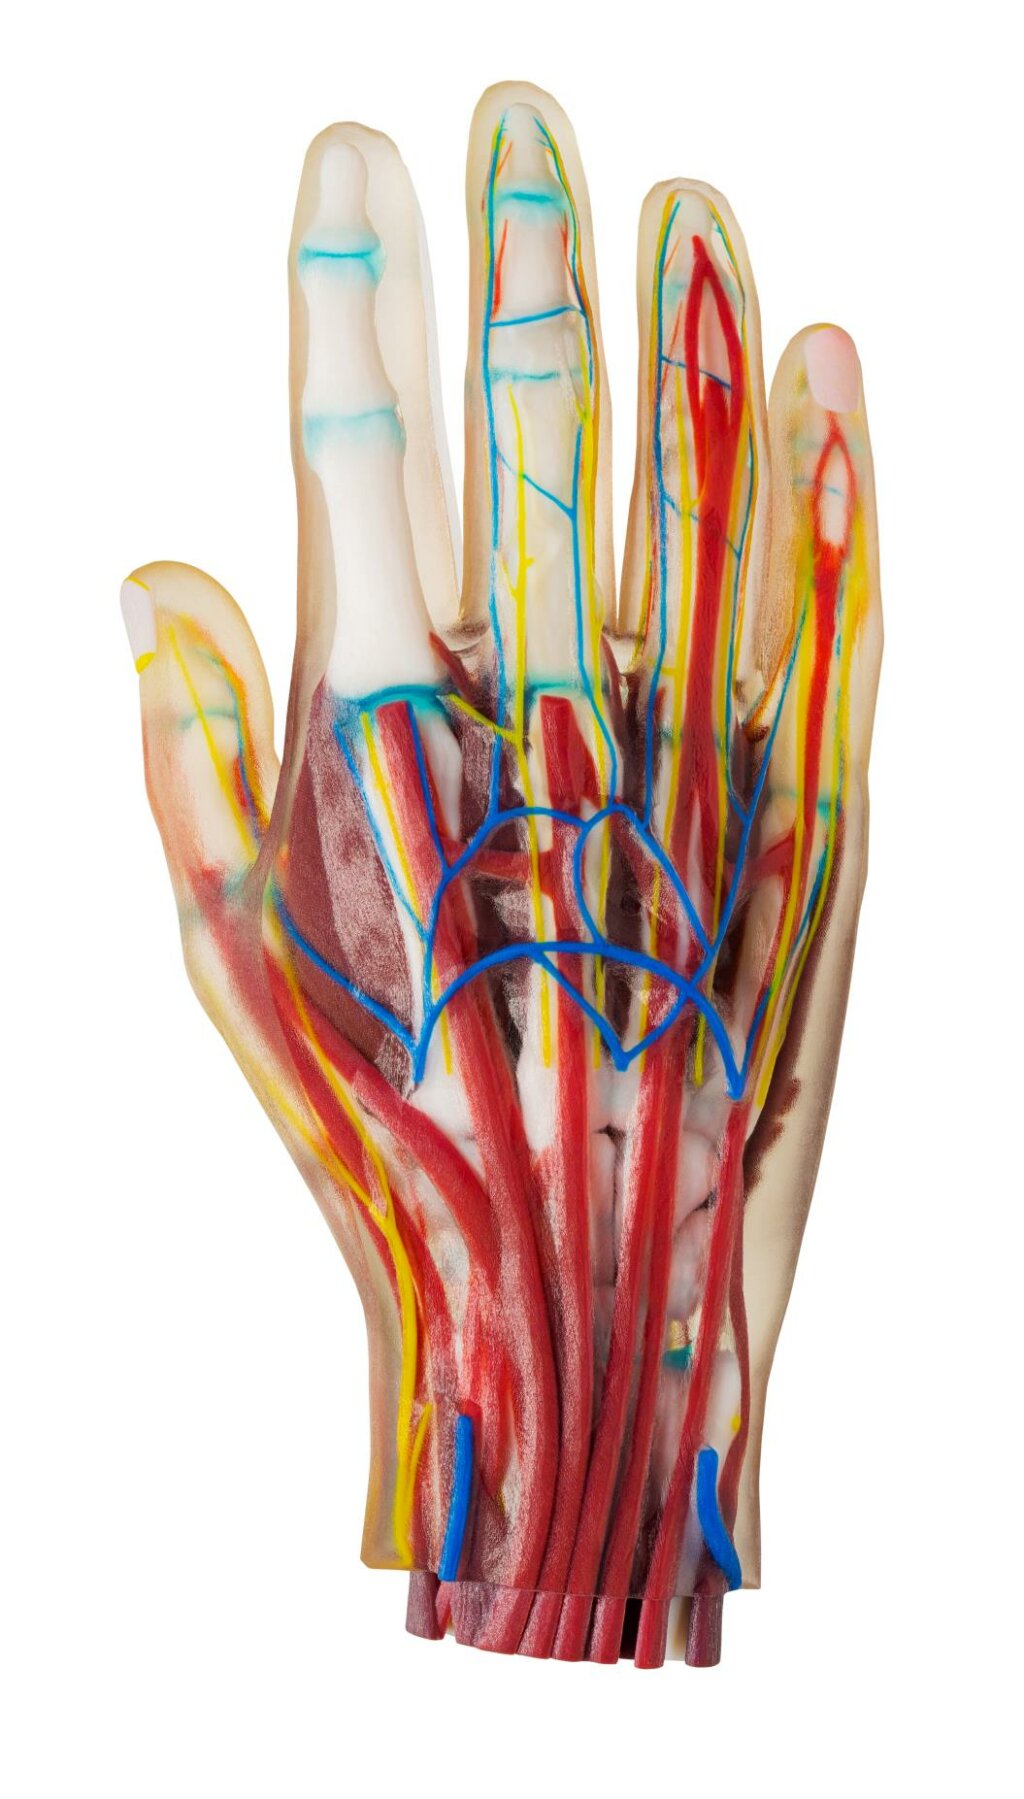 3D Druck Stratasys Anatomie in der Medizin. J850 Digital Anatomy 3D Drucker.